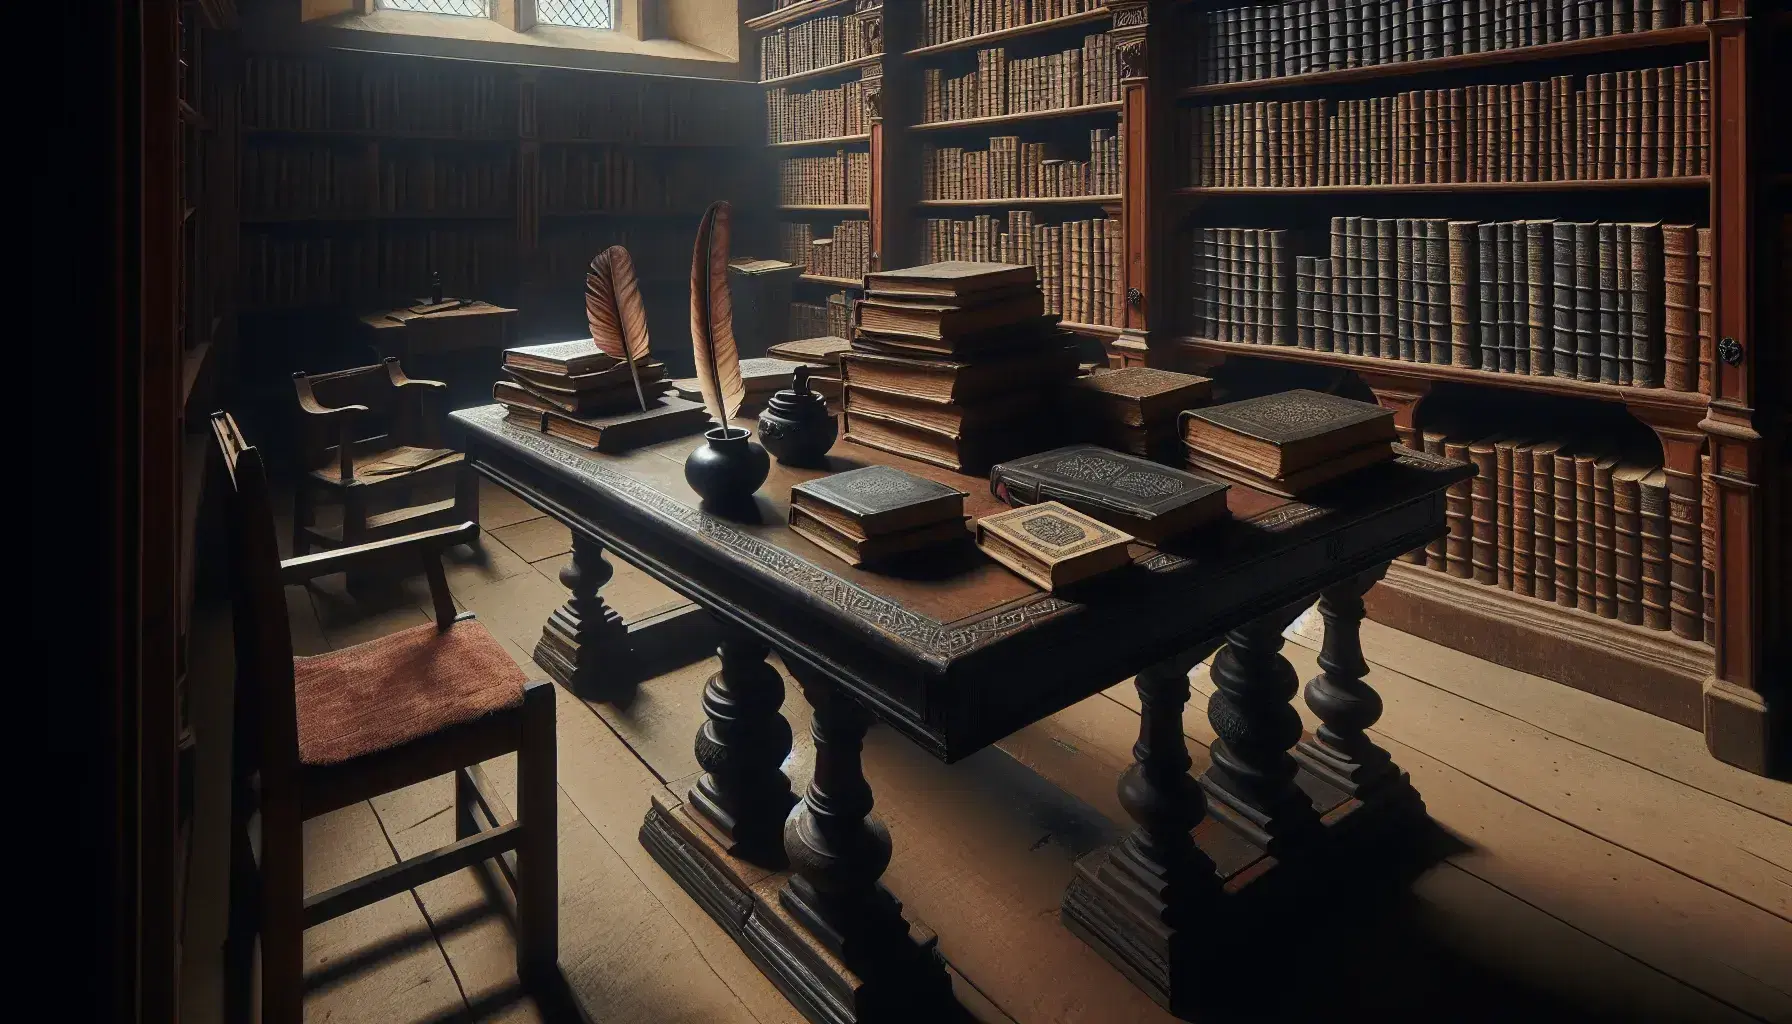 Biblioteca medieval con mesa de madera oscura y libros antiguos, tintero con pluma y estanterías repletas, junto a figura en túnica marrón y silla con cojín rojo.